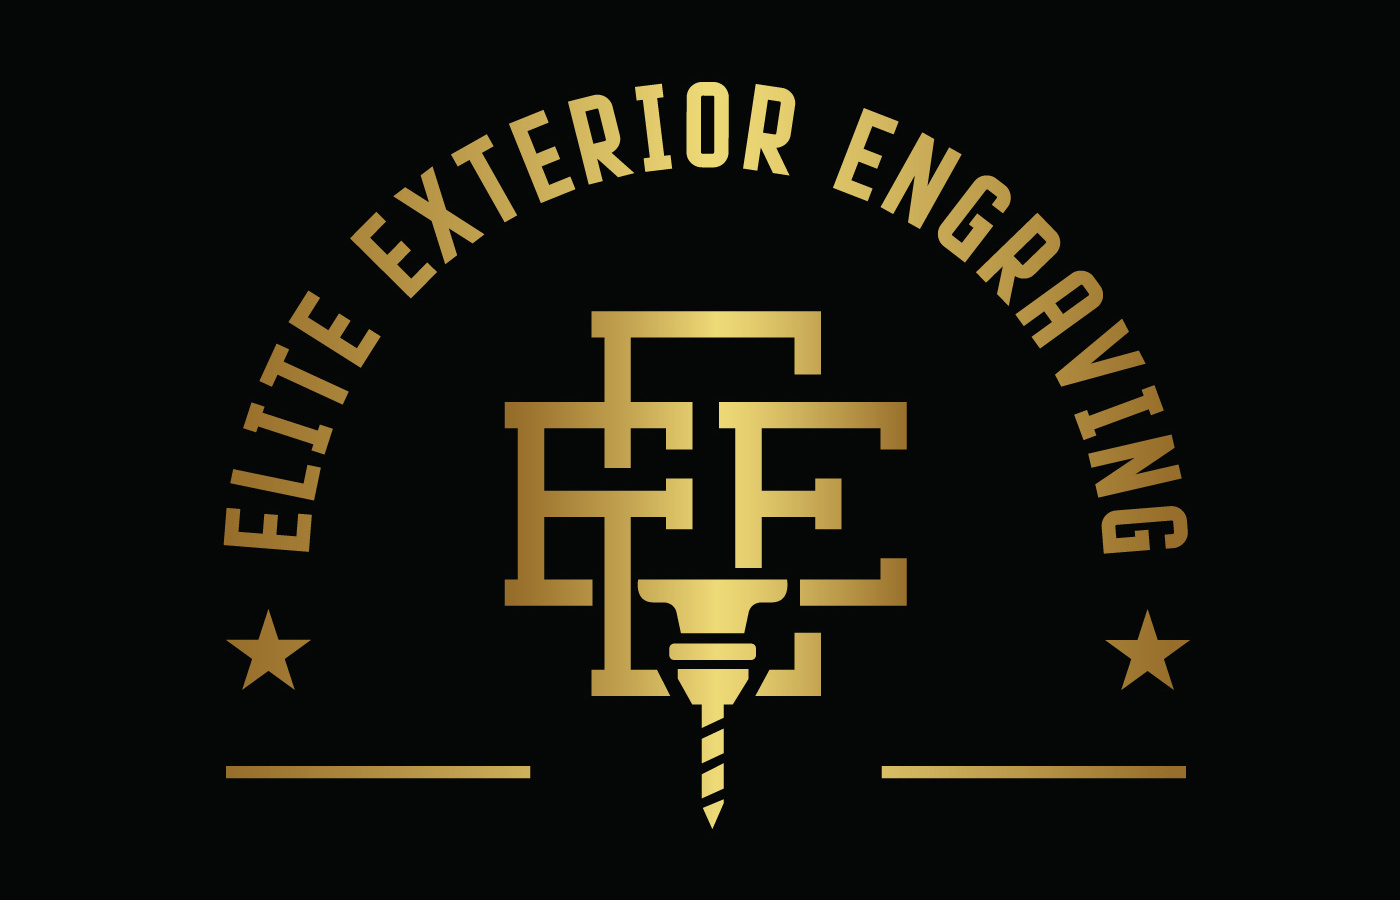 Elite Exterior Engraving